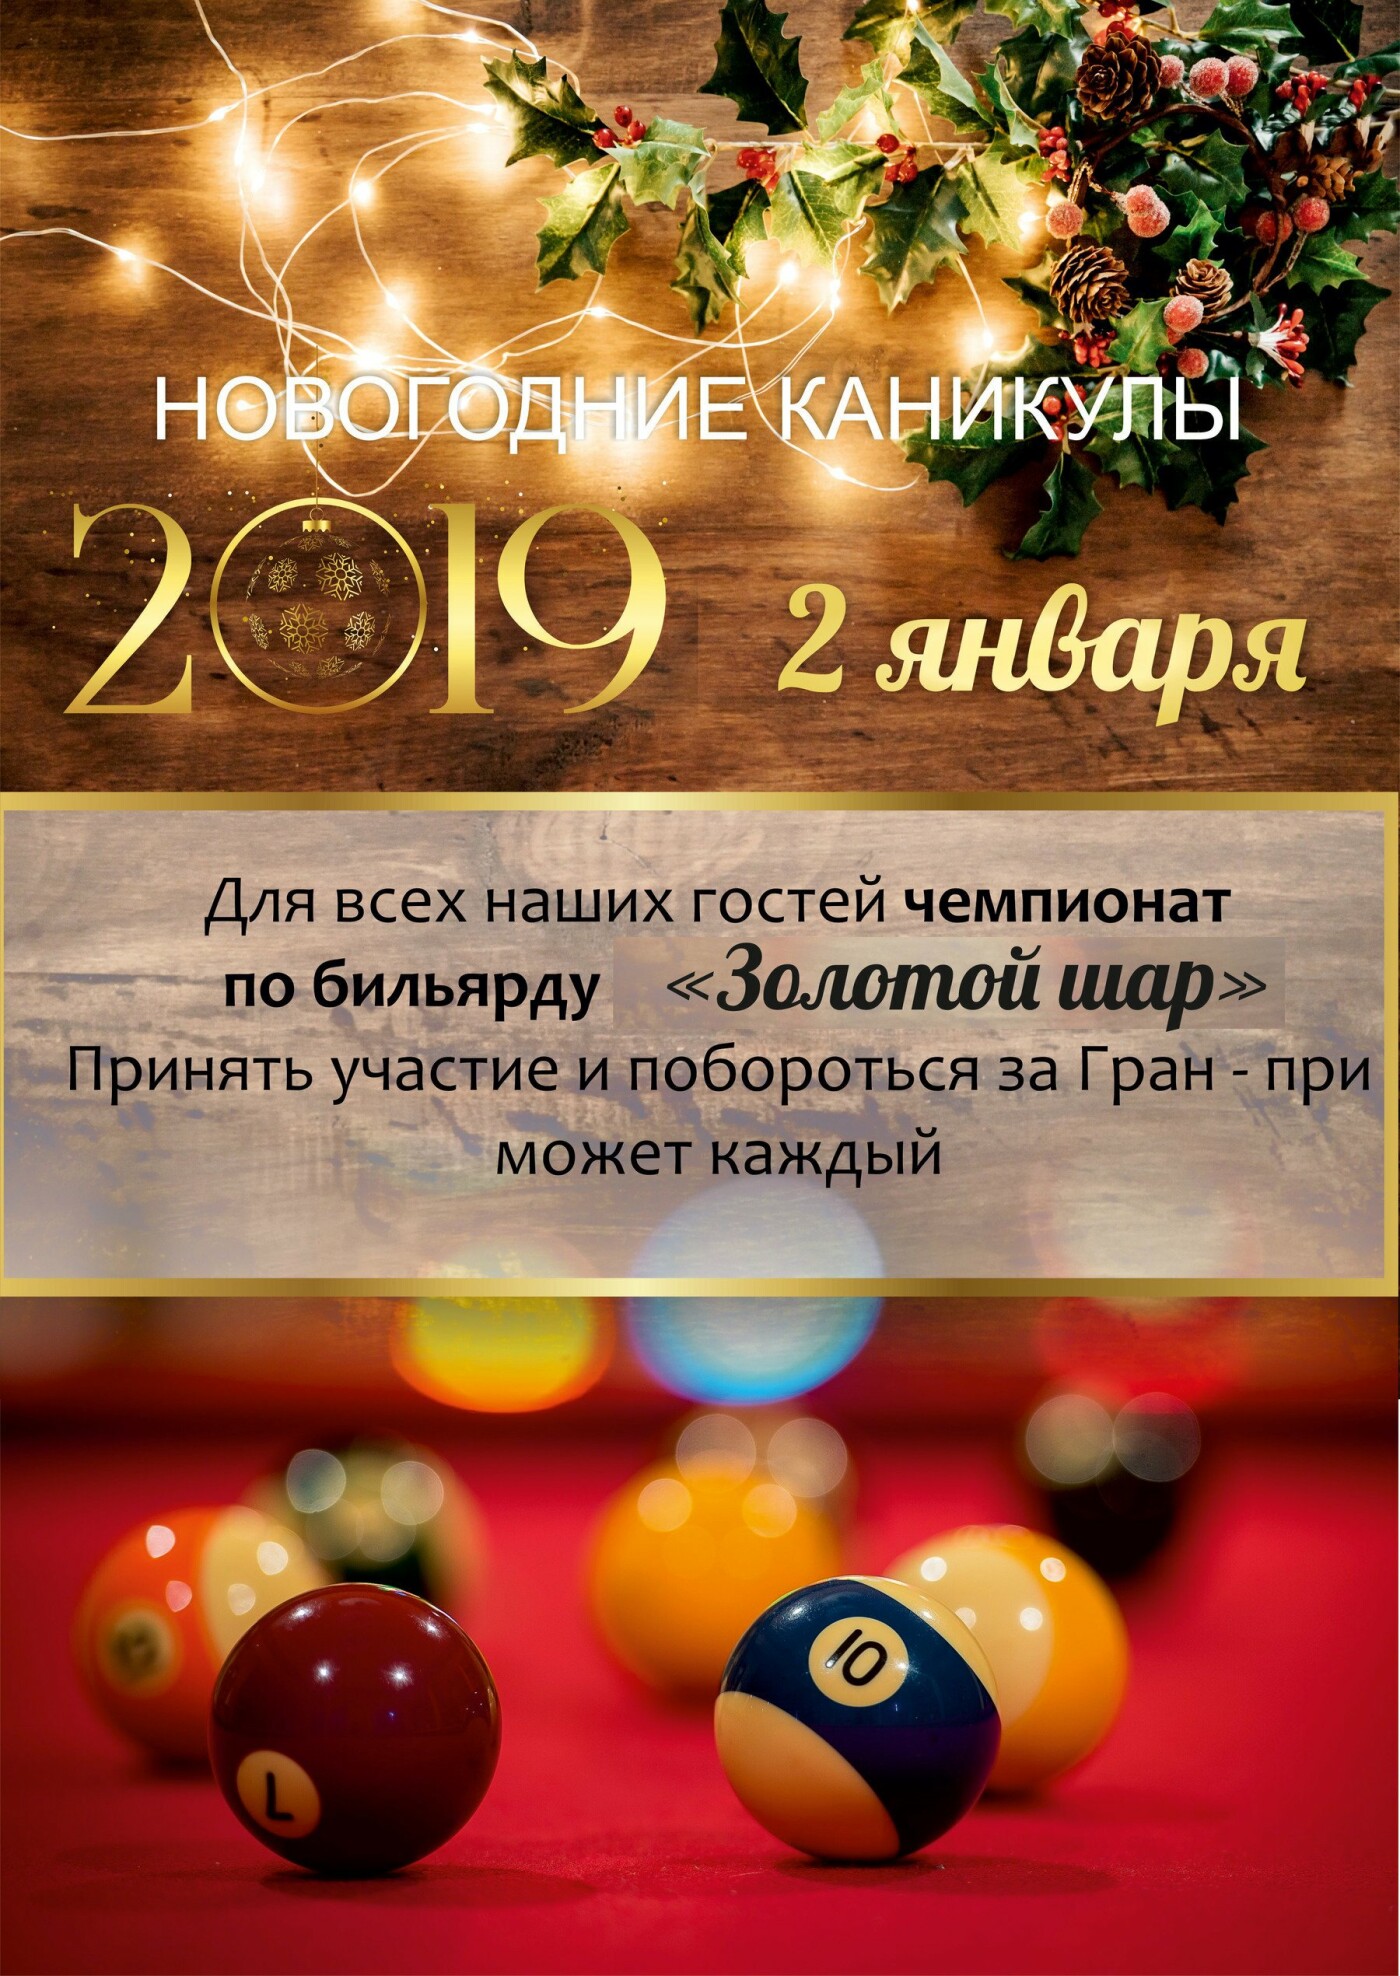 Встречайте Новый год-2019 всей семьей в санатории «Айвазовское»!, фото-4